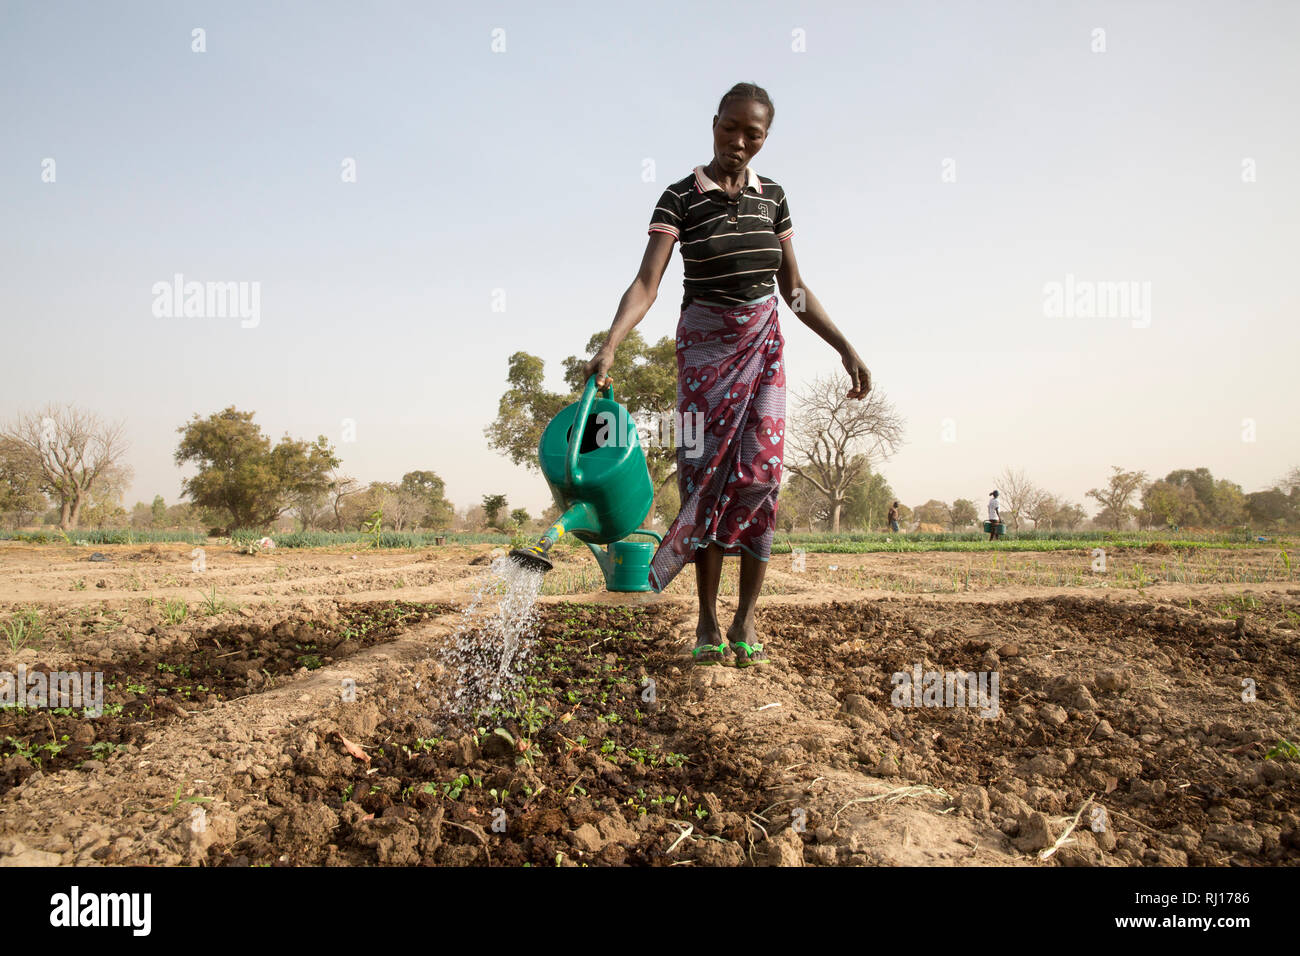 La-toden Dorf, yako Provinz, Burkina Faso. Eine Frau Bewässerung herseedlings in ihrem Markt Garten. Es besteht jedoch ein Mangel an, da die Brunnen in den Garten gegraben am Ende der letzten Regenzeit und die meisten sind jetzt trocken. Stockfoto